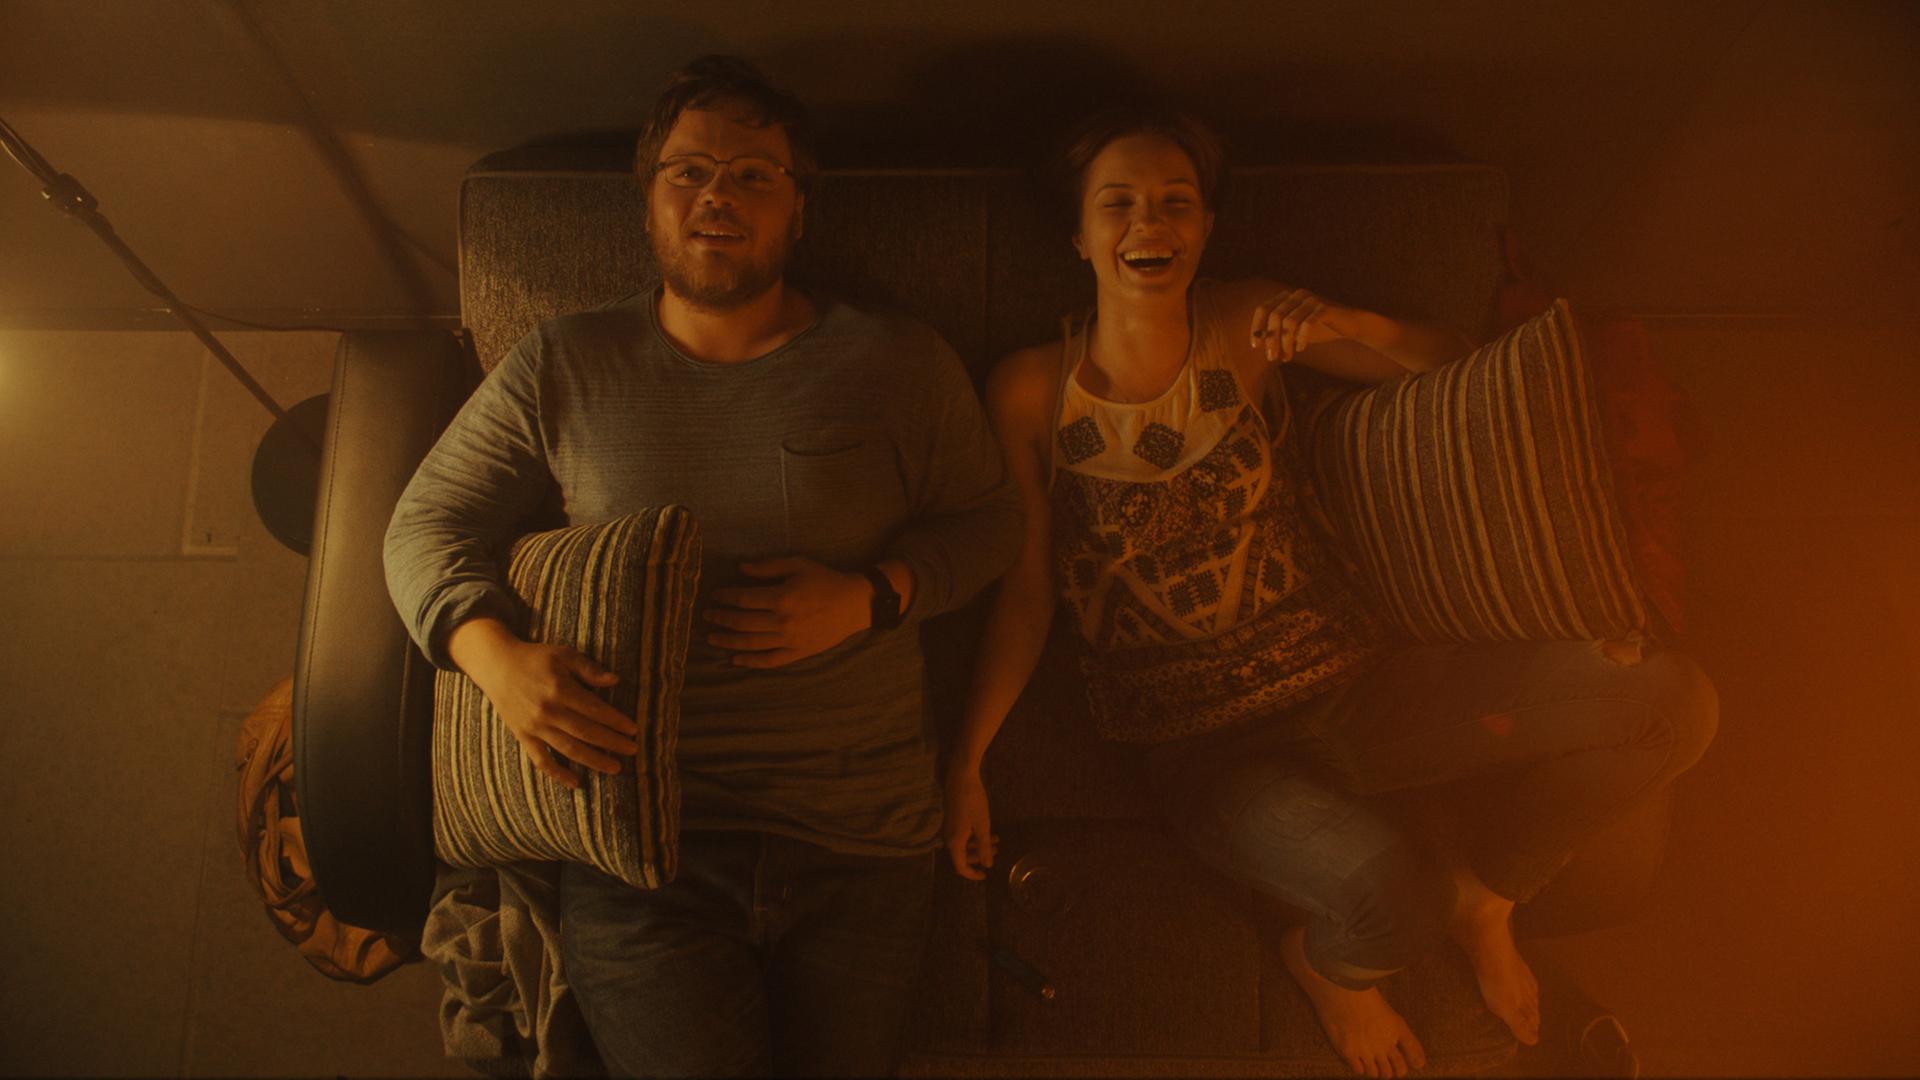 Adam Ild Rohweder und Paulina Galazka liegen in einer Szene aus "A Young Man with High Potential" auf einem Sofa und lachen. Sie werden von oben gezeigt, das Licht ist schummrig, aber warm.